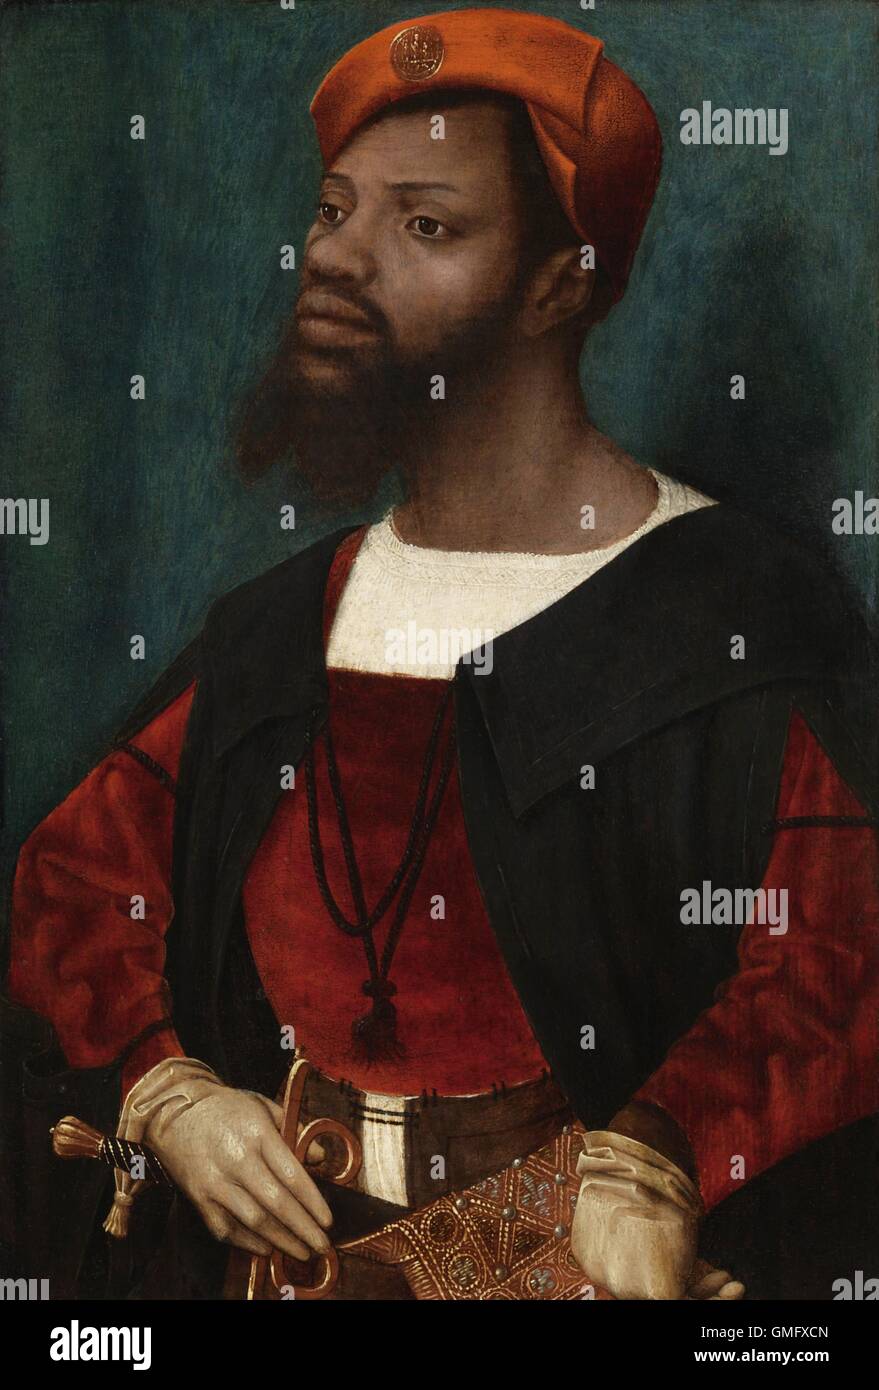 Porträt von einem afrikanischen Mann (Christophle le mehr) von Jan Jansz Mostaert, c. 1525-30, niederländischer Malerei, Öl auf Holz. Christophle le mehr war ein schwarzer Bogenschütze und Leibwächter von Kaiser Charles V (BSLOC 2016 2 200) Stockfoto